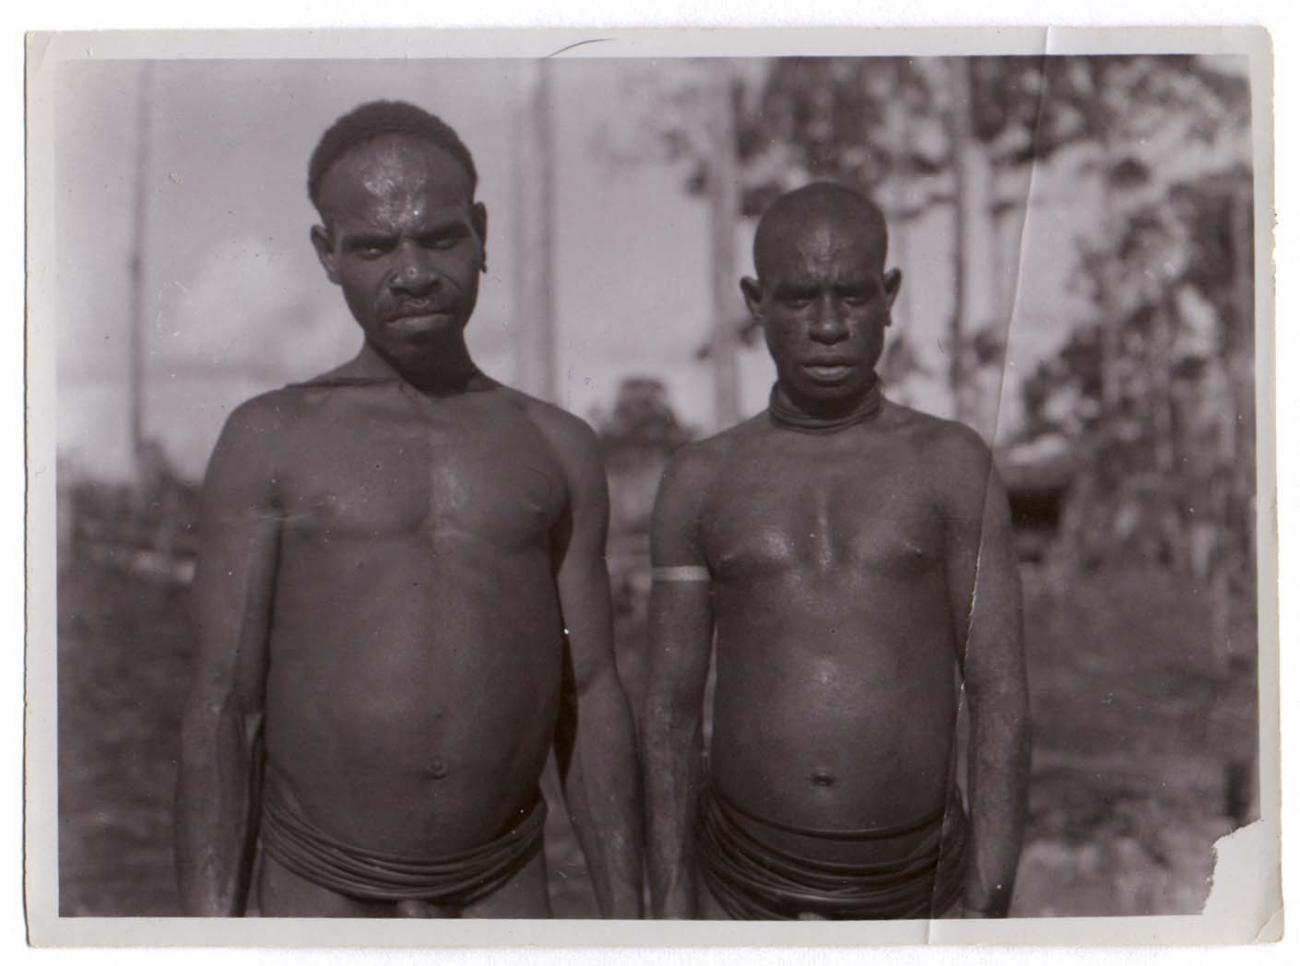 BD/38/7 - 
Twee mannen van West Papua.
